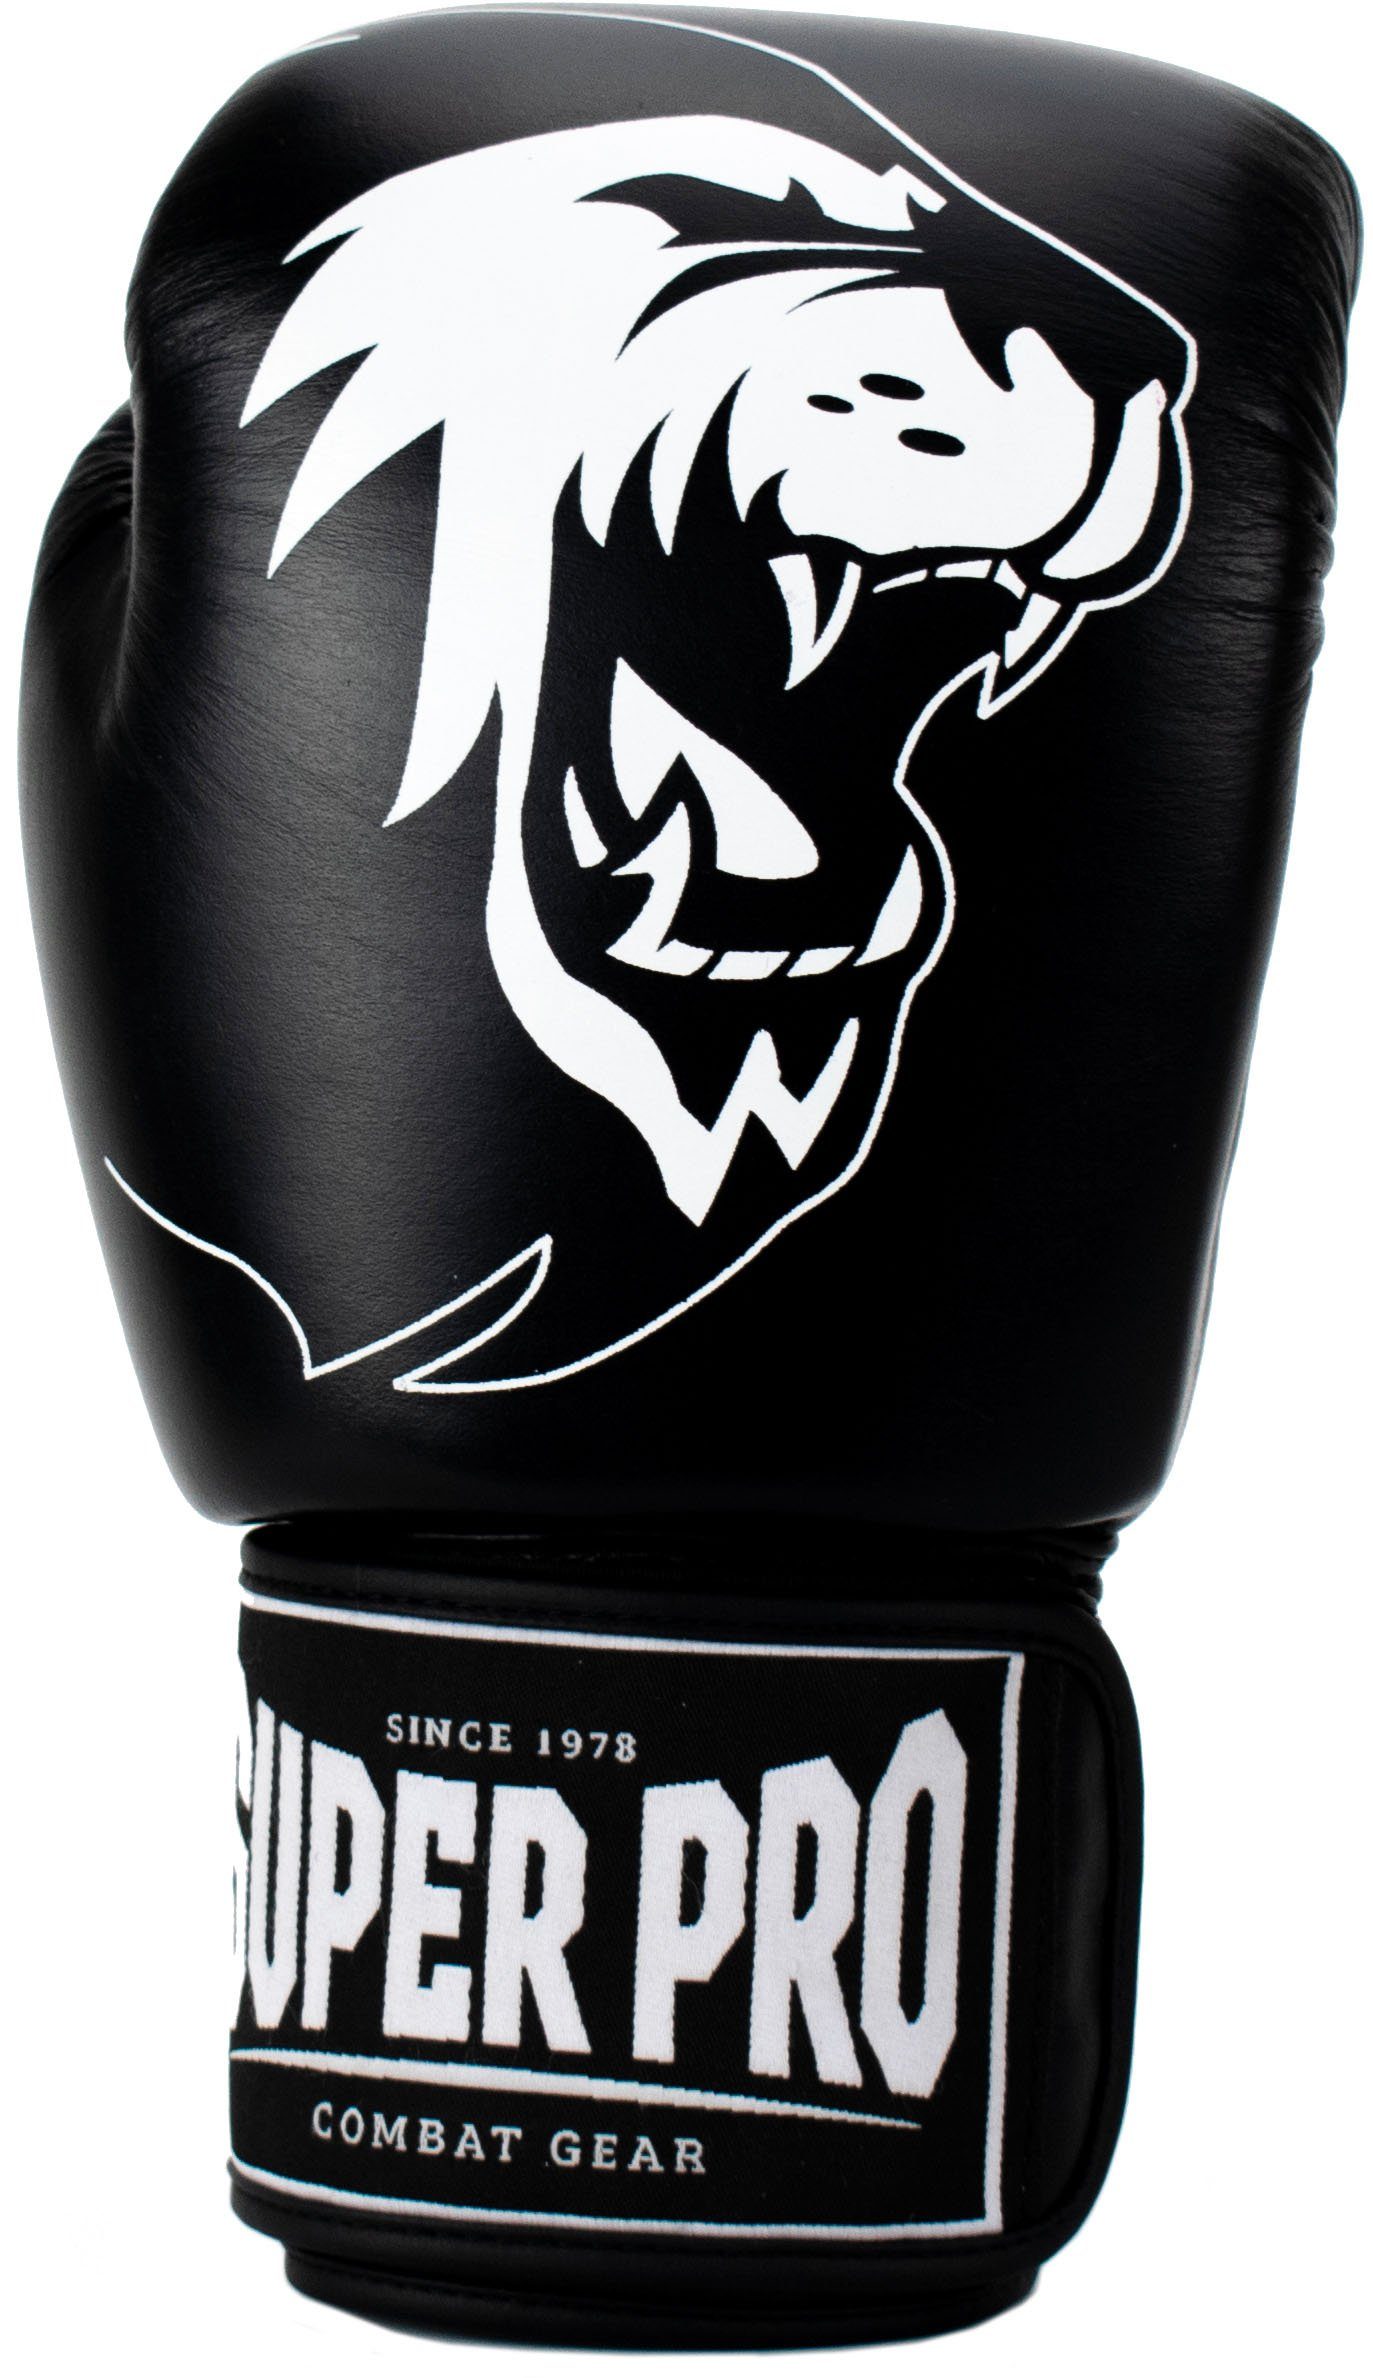 Super Pro Boxhandschuhe Warrior schwarz/weiß